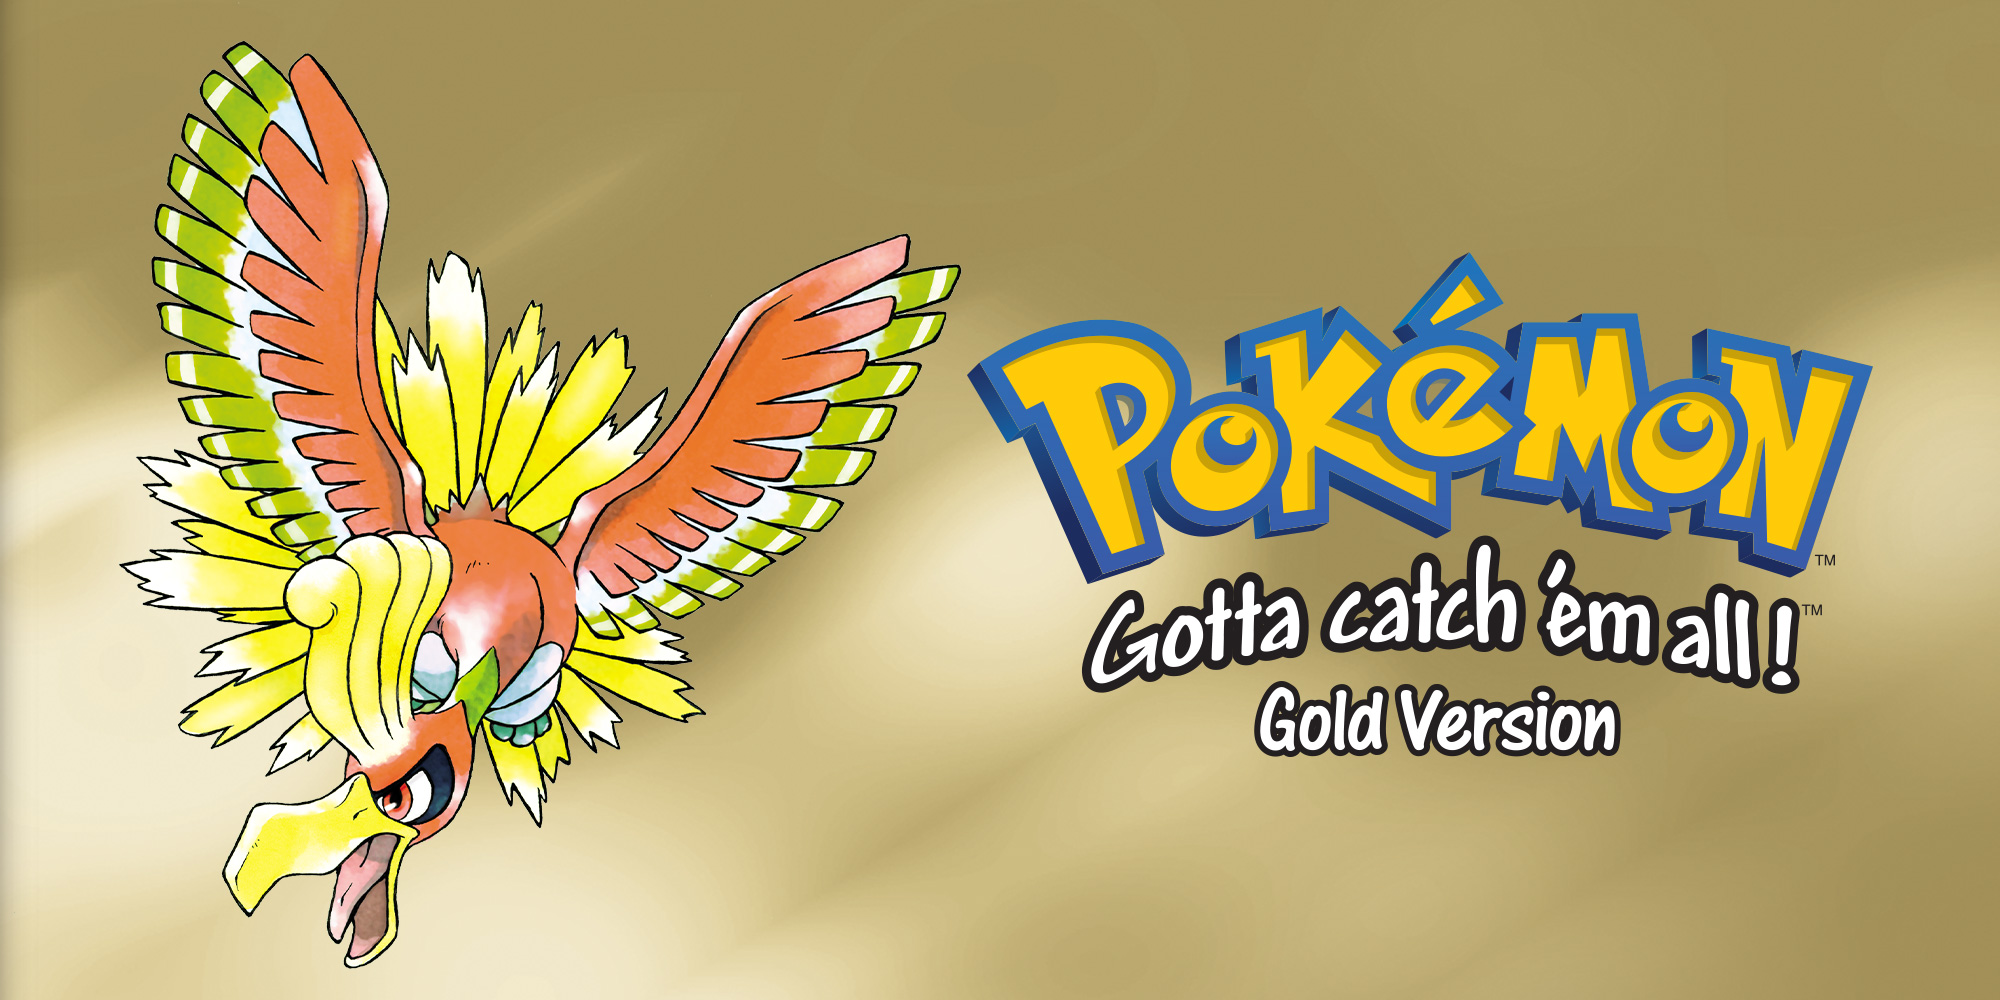 pokemon gold title screen